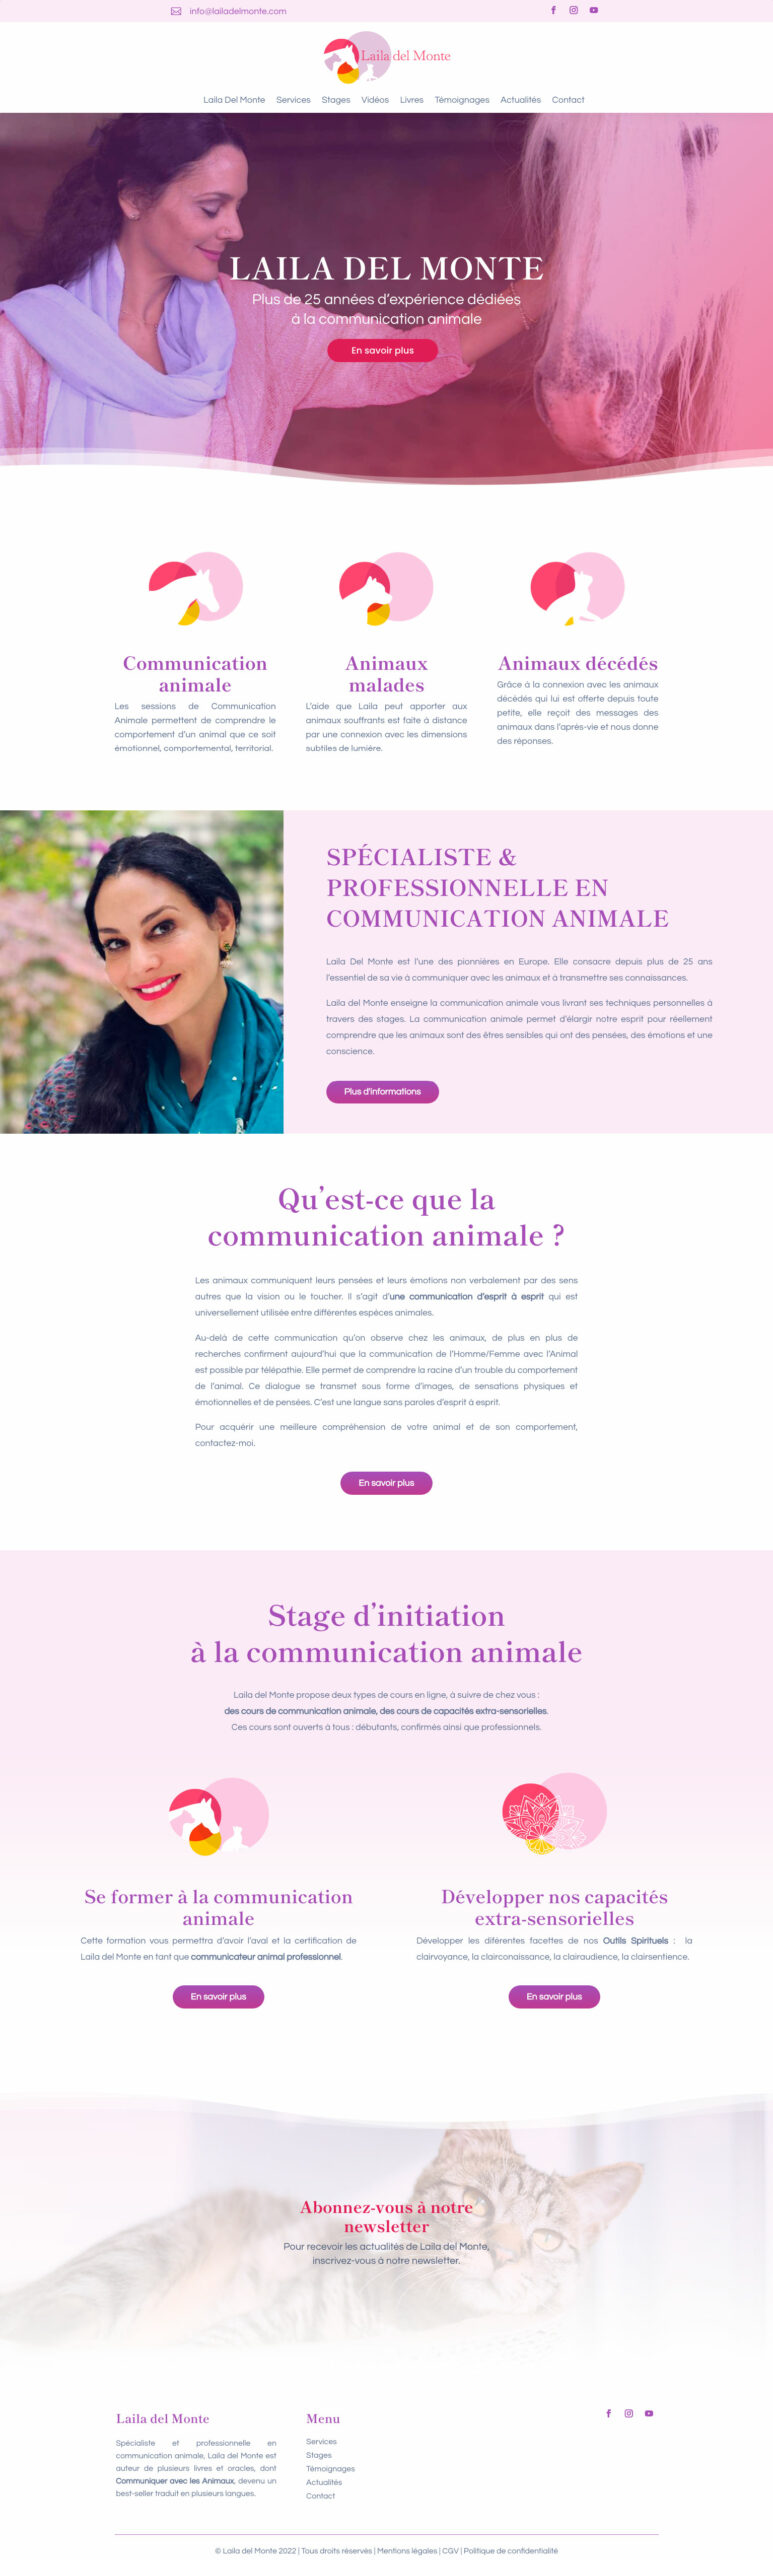 Laila_del_Monte_Professionnelle-en-communication-animale